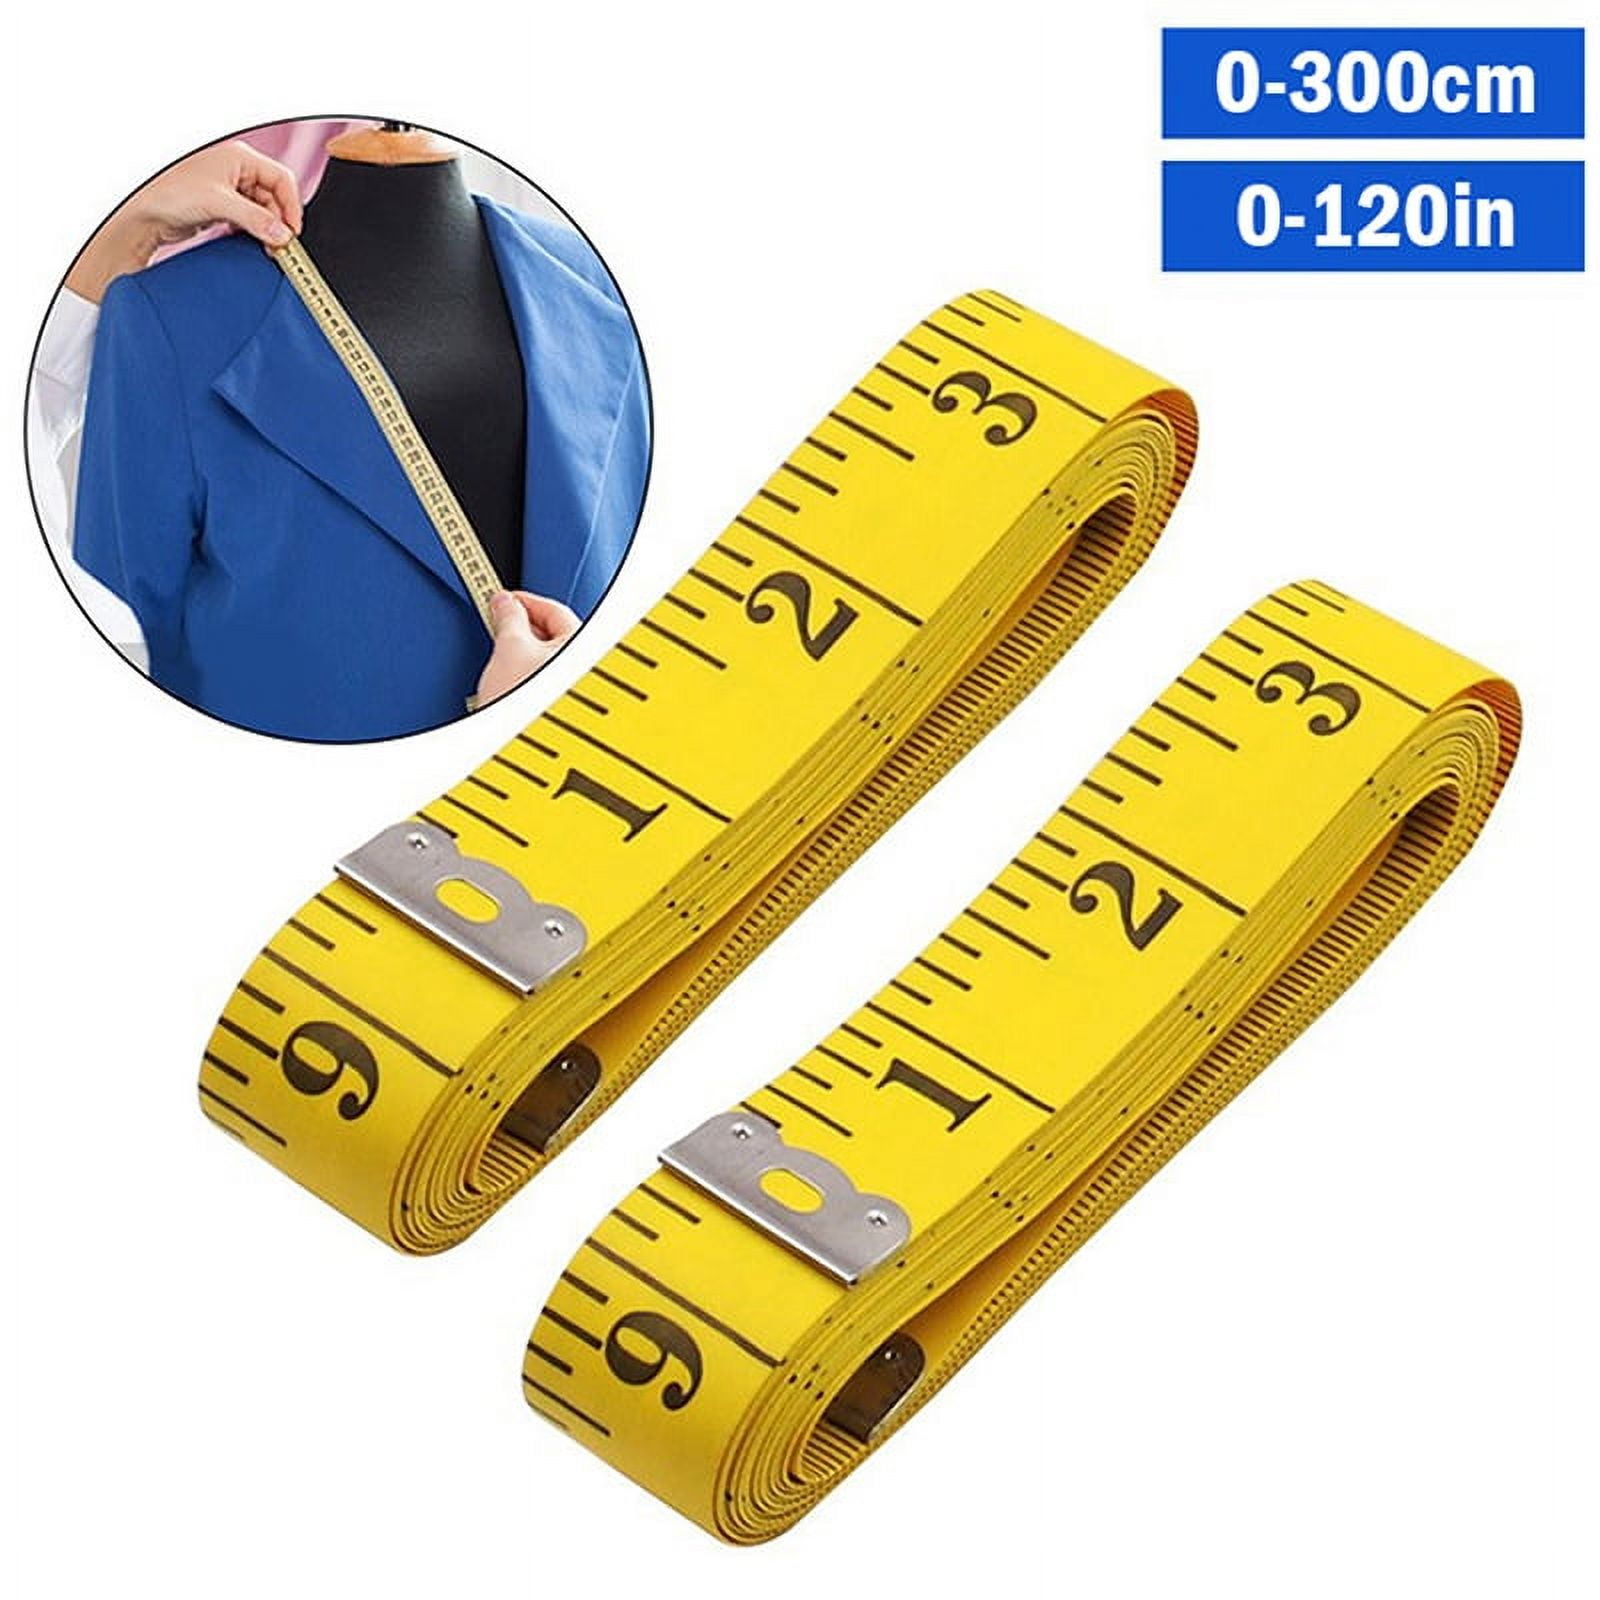 lookat Body Measuring Ruler Sewing Cloth Measurement Tape (Multicolour,  Pack of 3) Measurement Tape Price in India - Buy lookat Body Measuring  Ruler Sewing Cloth Measurement Tape (Multicolour, Pack of 3) Measurement